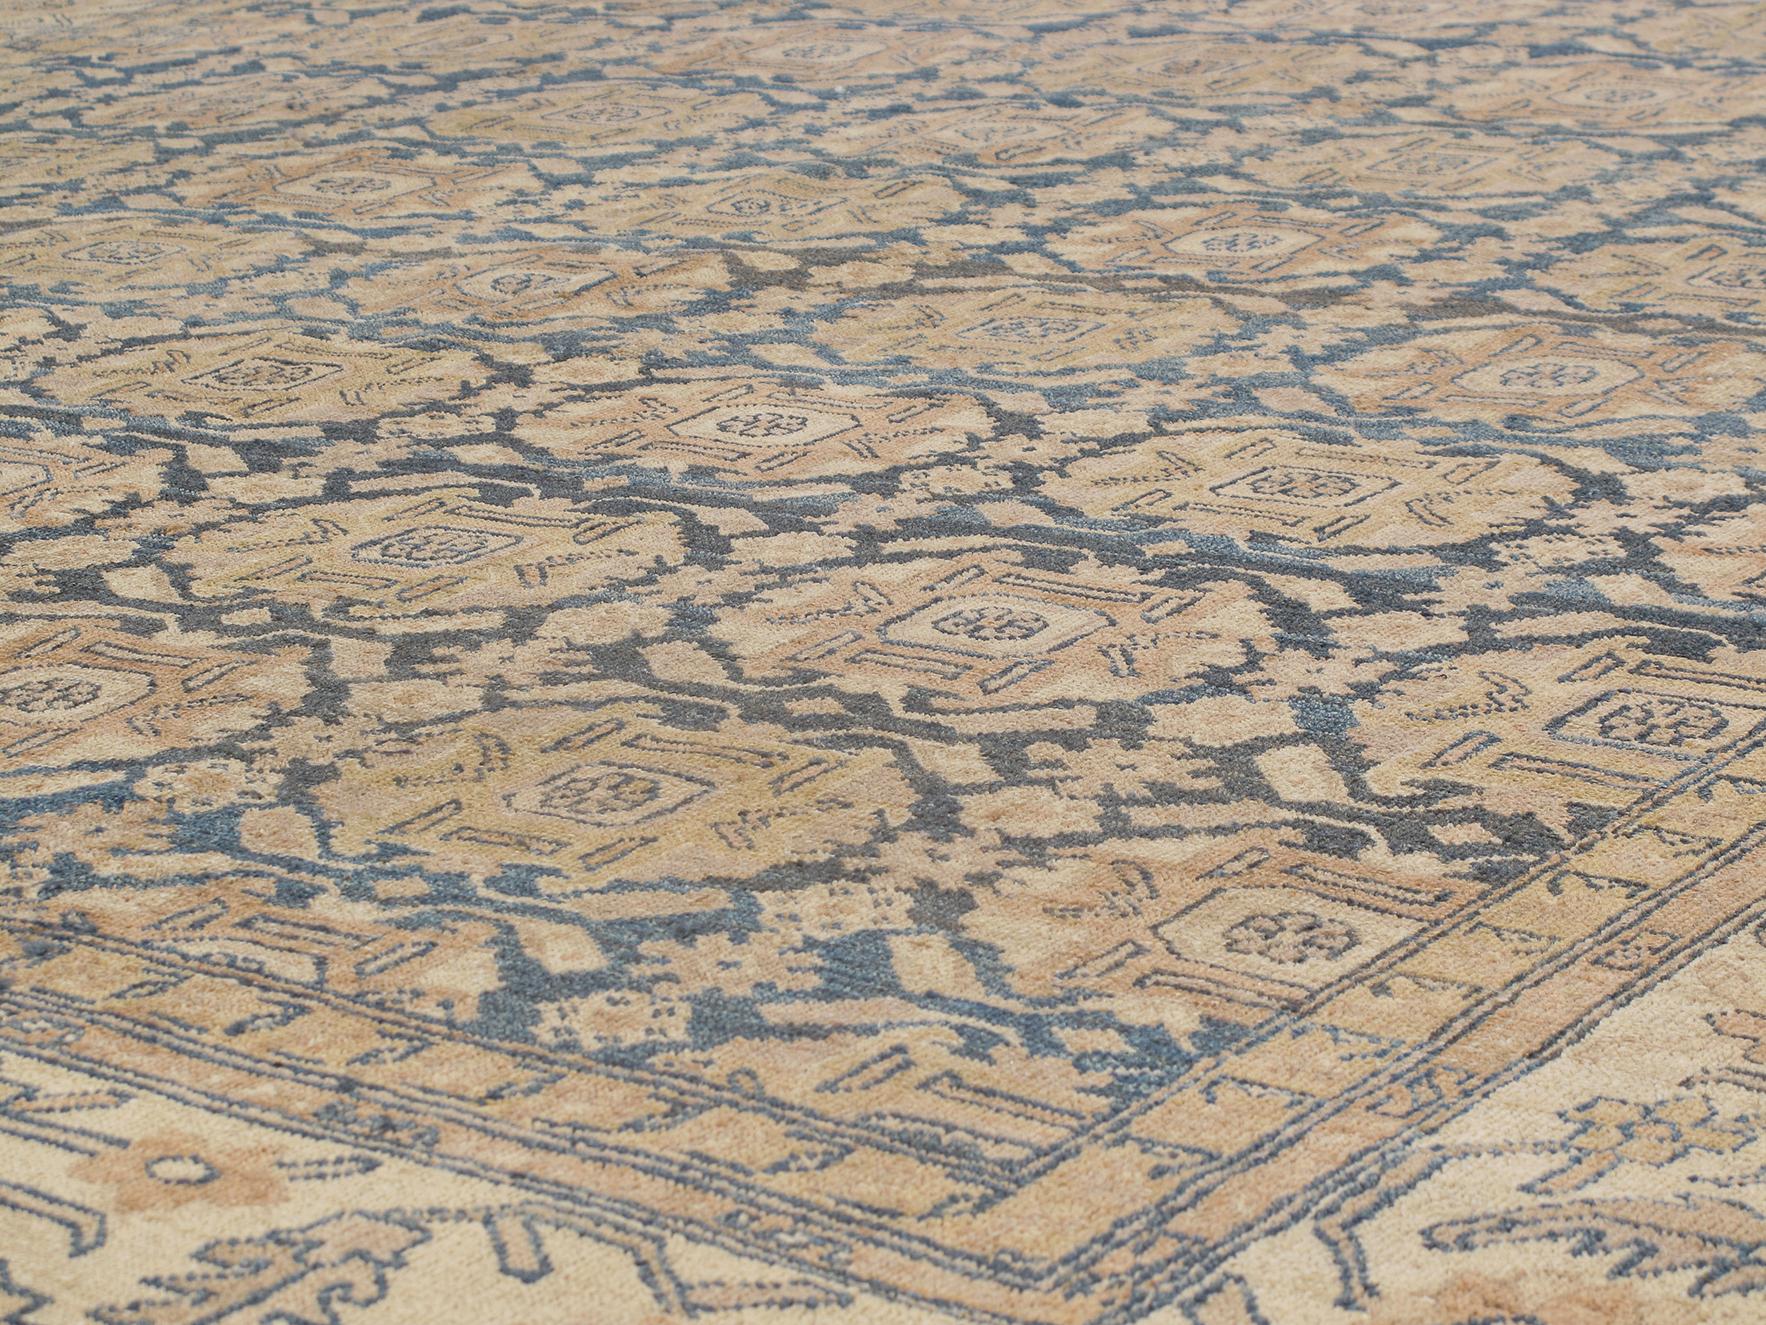 Dieser antike Hadji Jalili Tabriz-Teppich wurde von N A S I R I durch umfangreiche Recherchen und Reisen aufgespürt. Die im Nordwesten des Irans gelegene Stadt Täbris war die früheste Hauptstadt der Safawiden-Dynastie. Sie war länger als jede andere